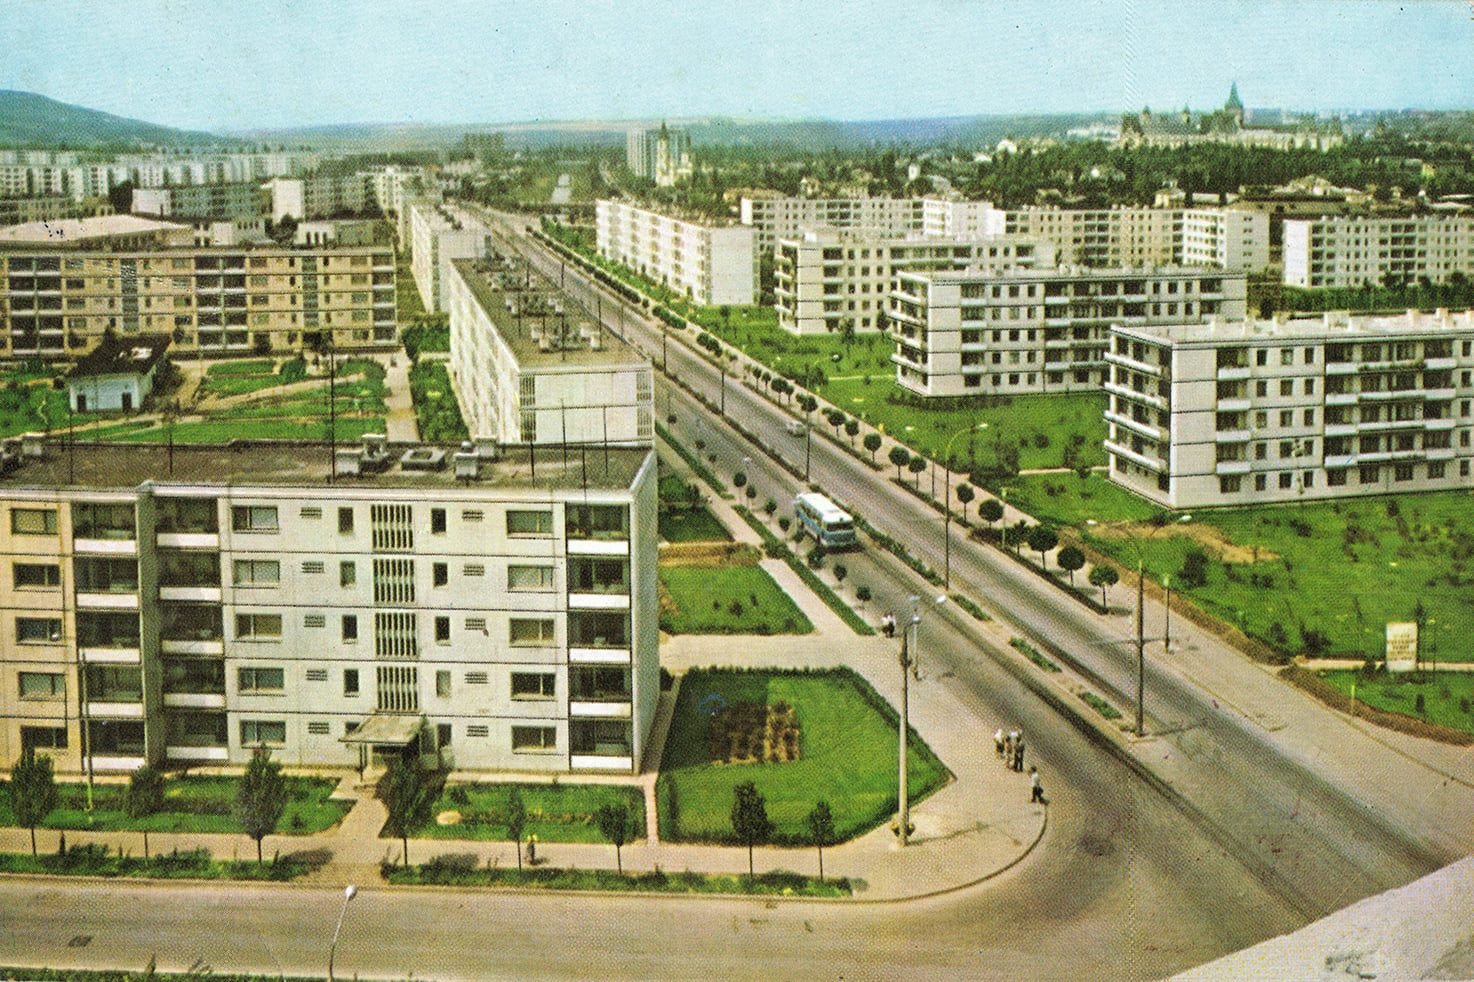  FOTO: Recunoașteți zona din Iași? Imagine din anul 1968